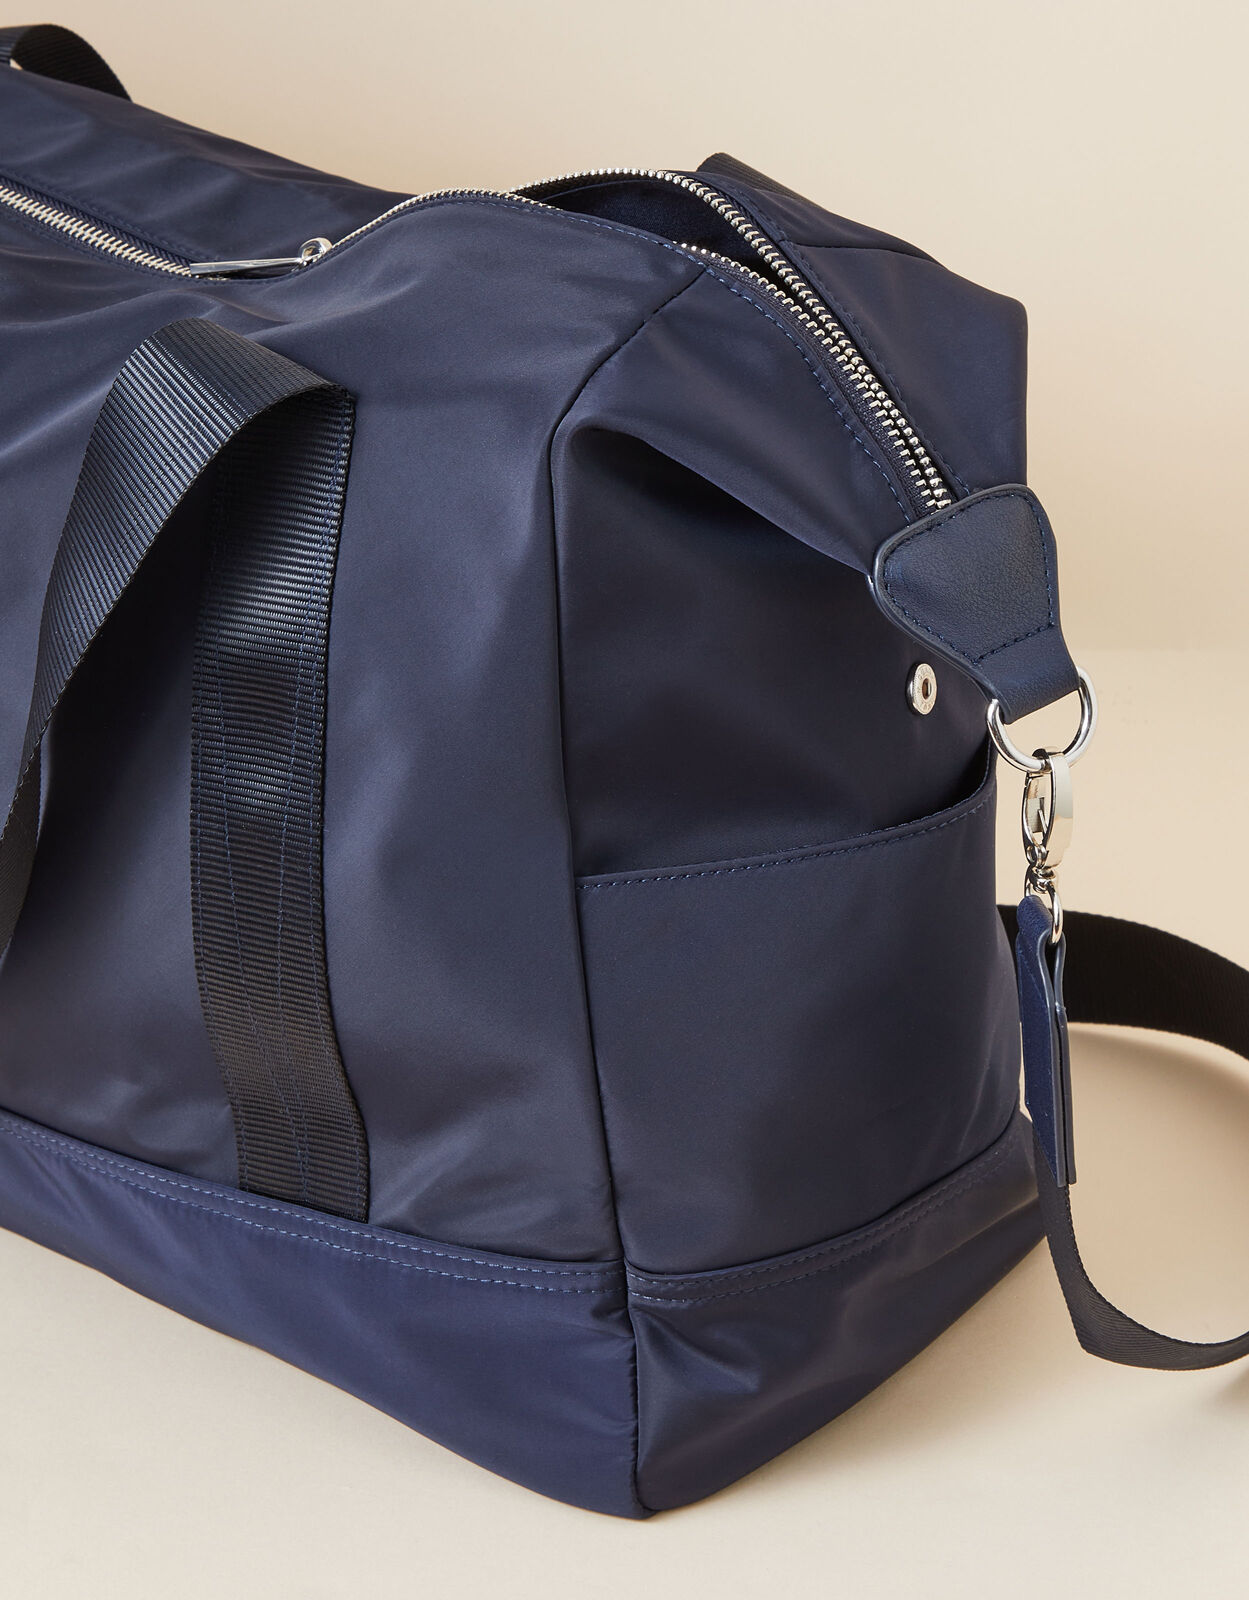 Recycled-nylon weekender bag Farfetch Damen Accessoires Taschen Reisetaschen 